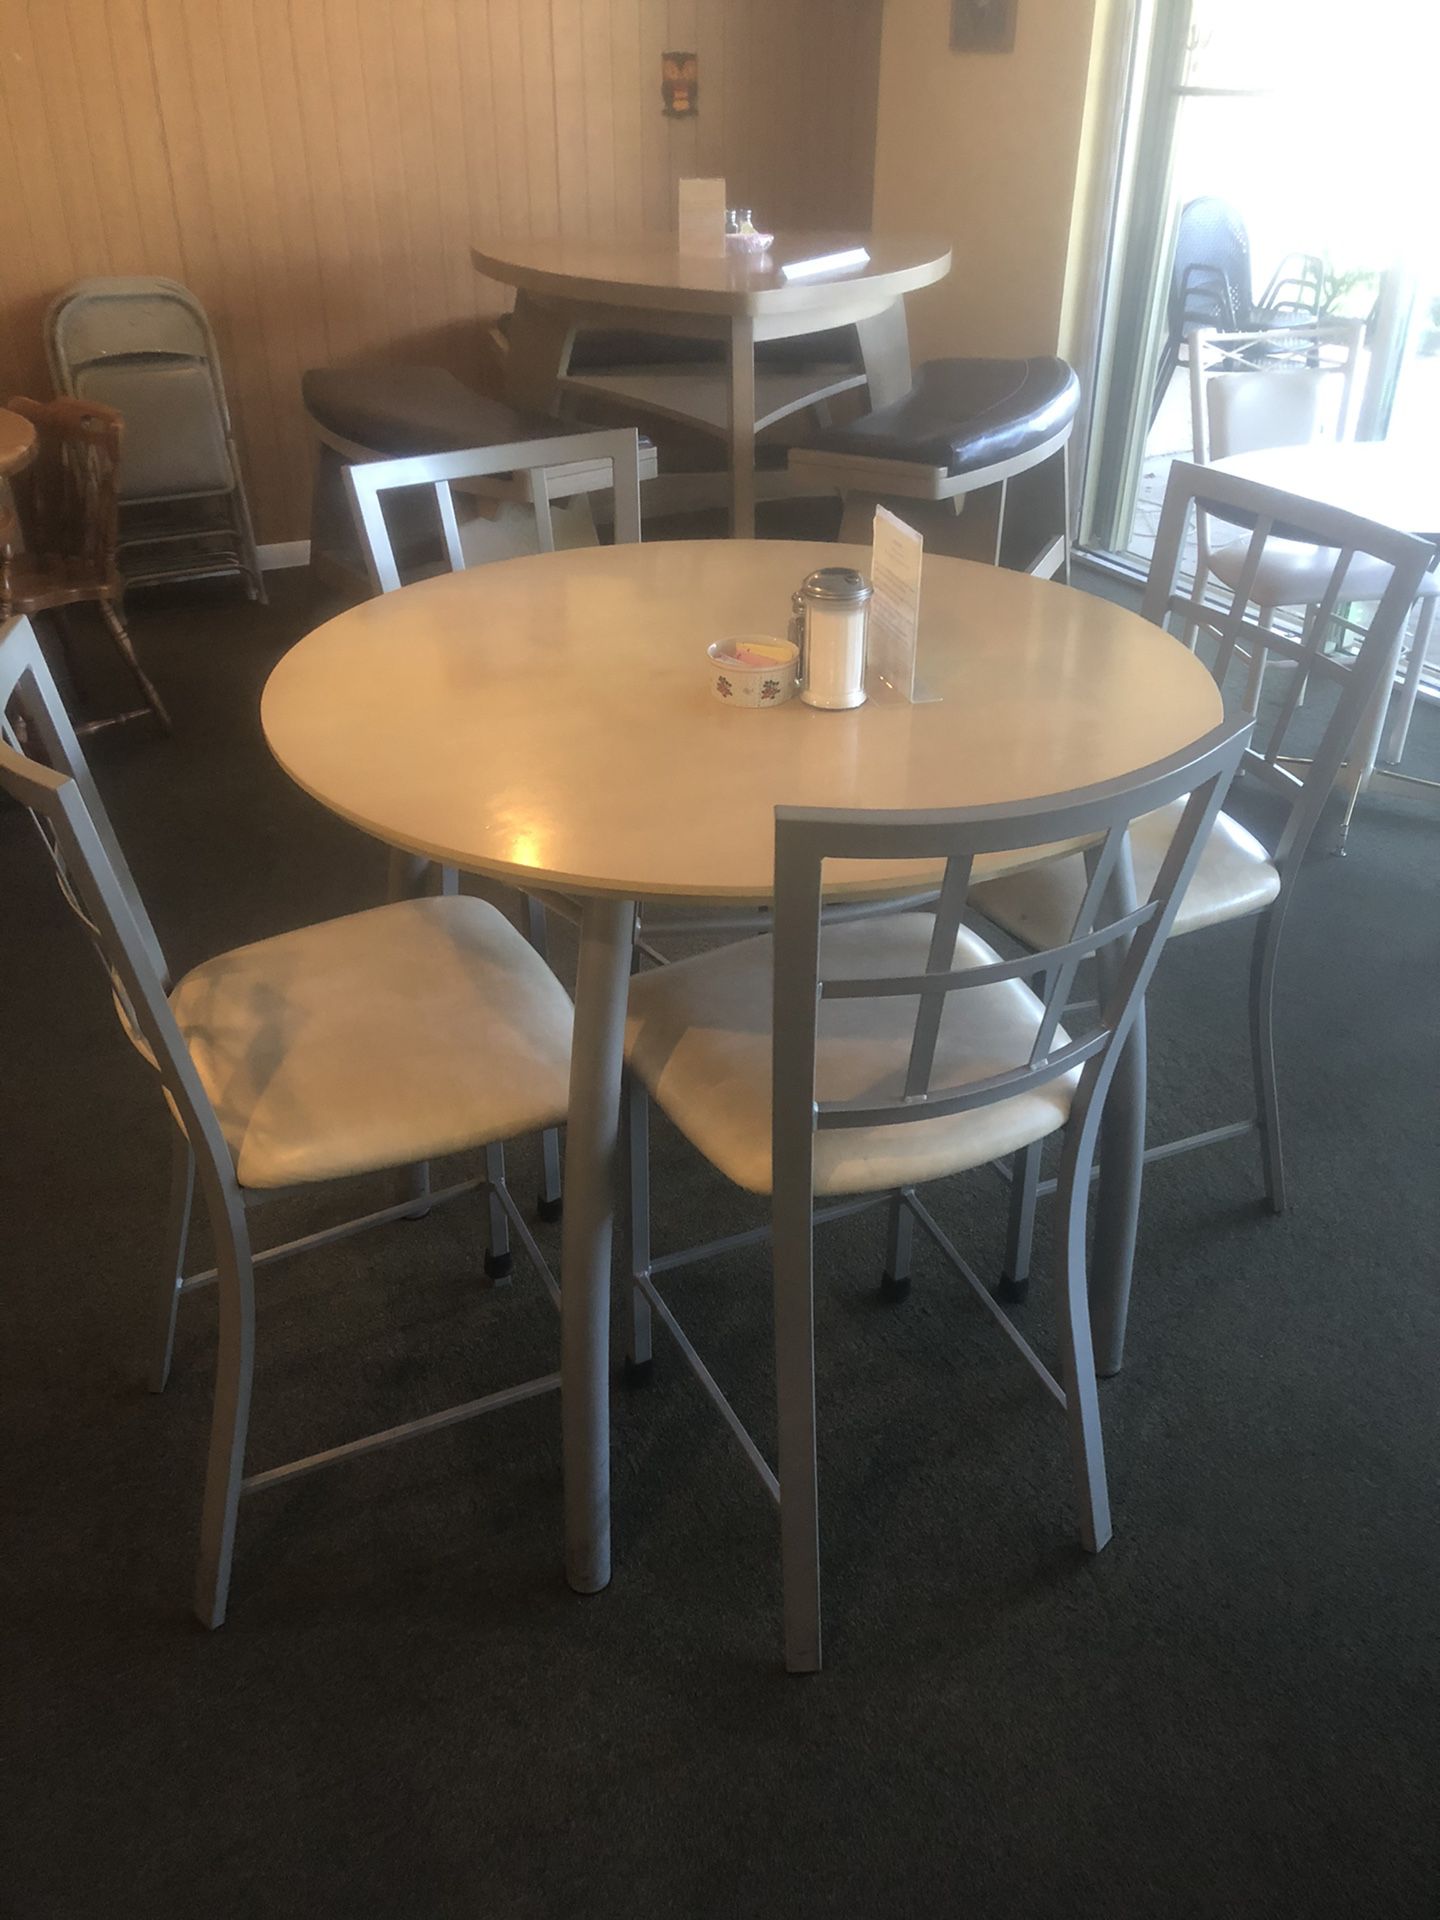 Restaurant tables/ dining room